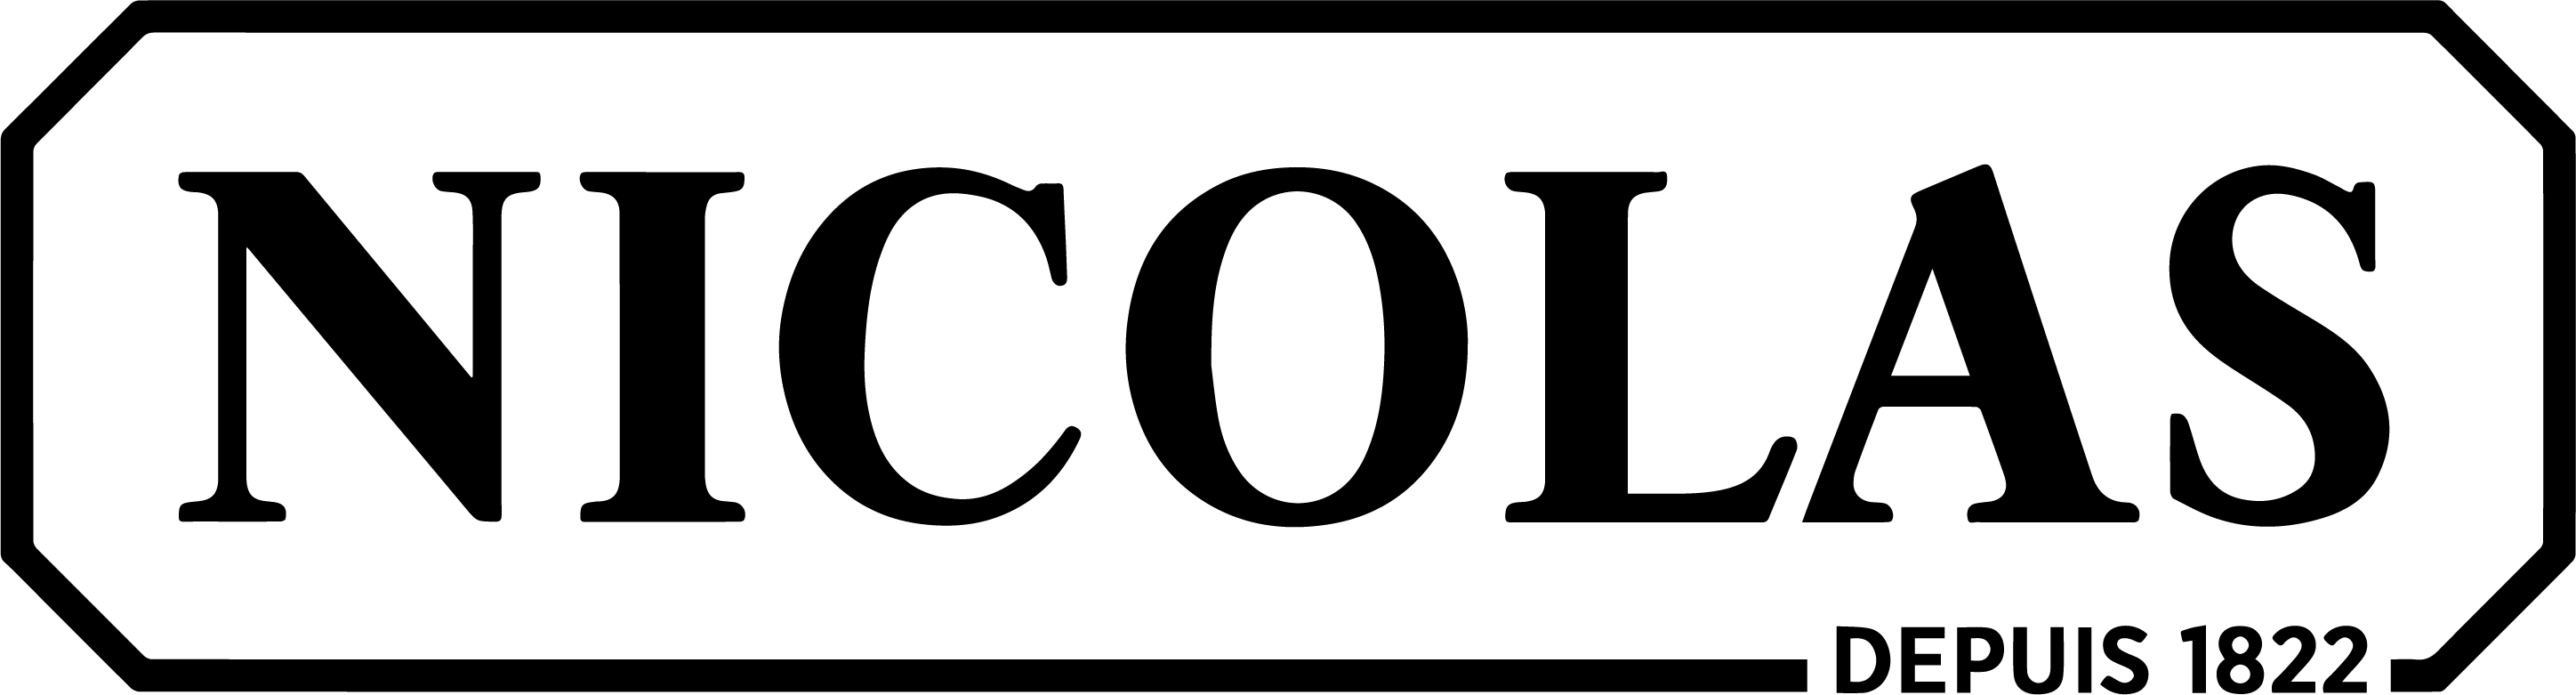 logotipo del archivo - Nicolas